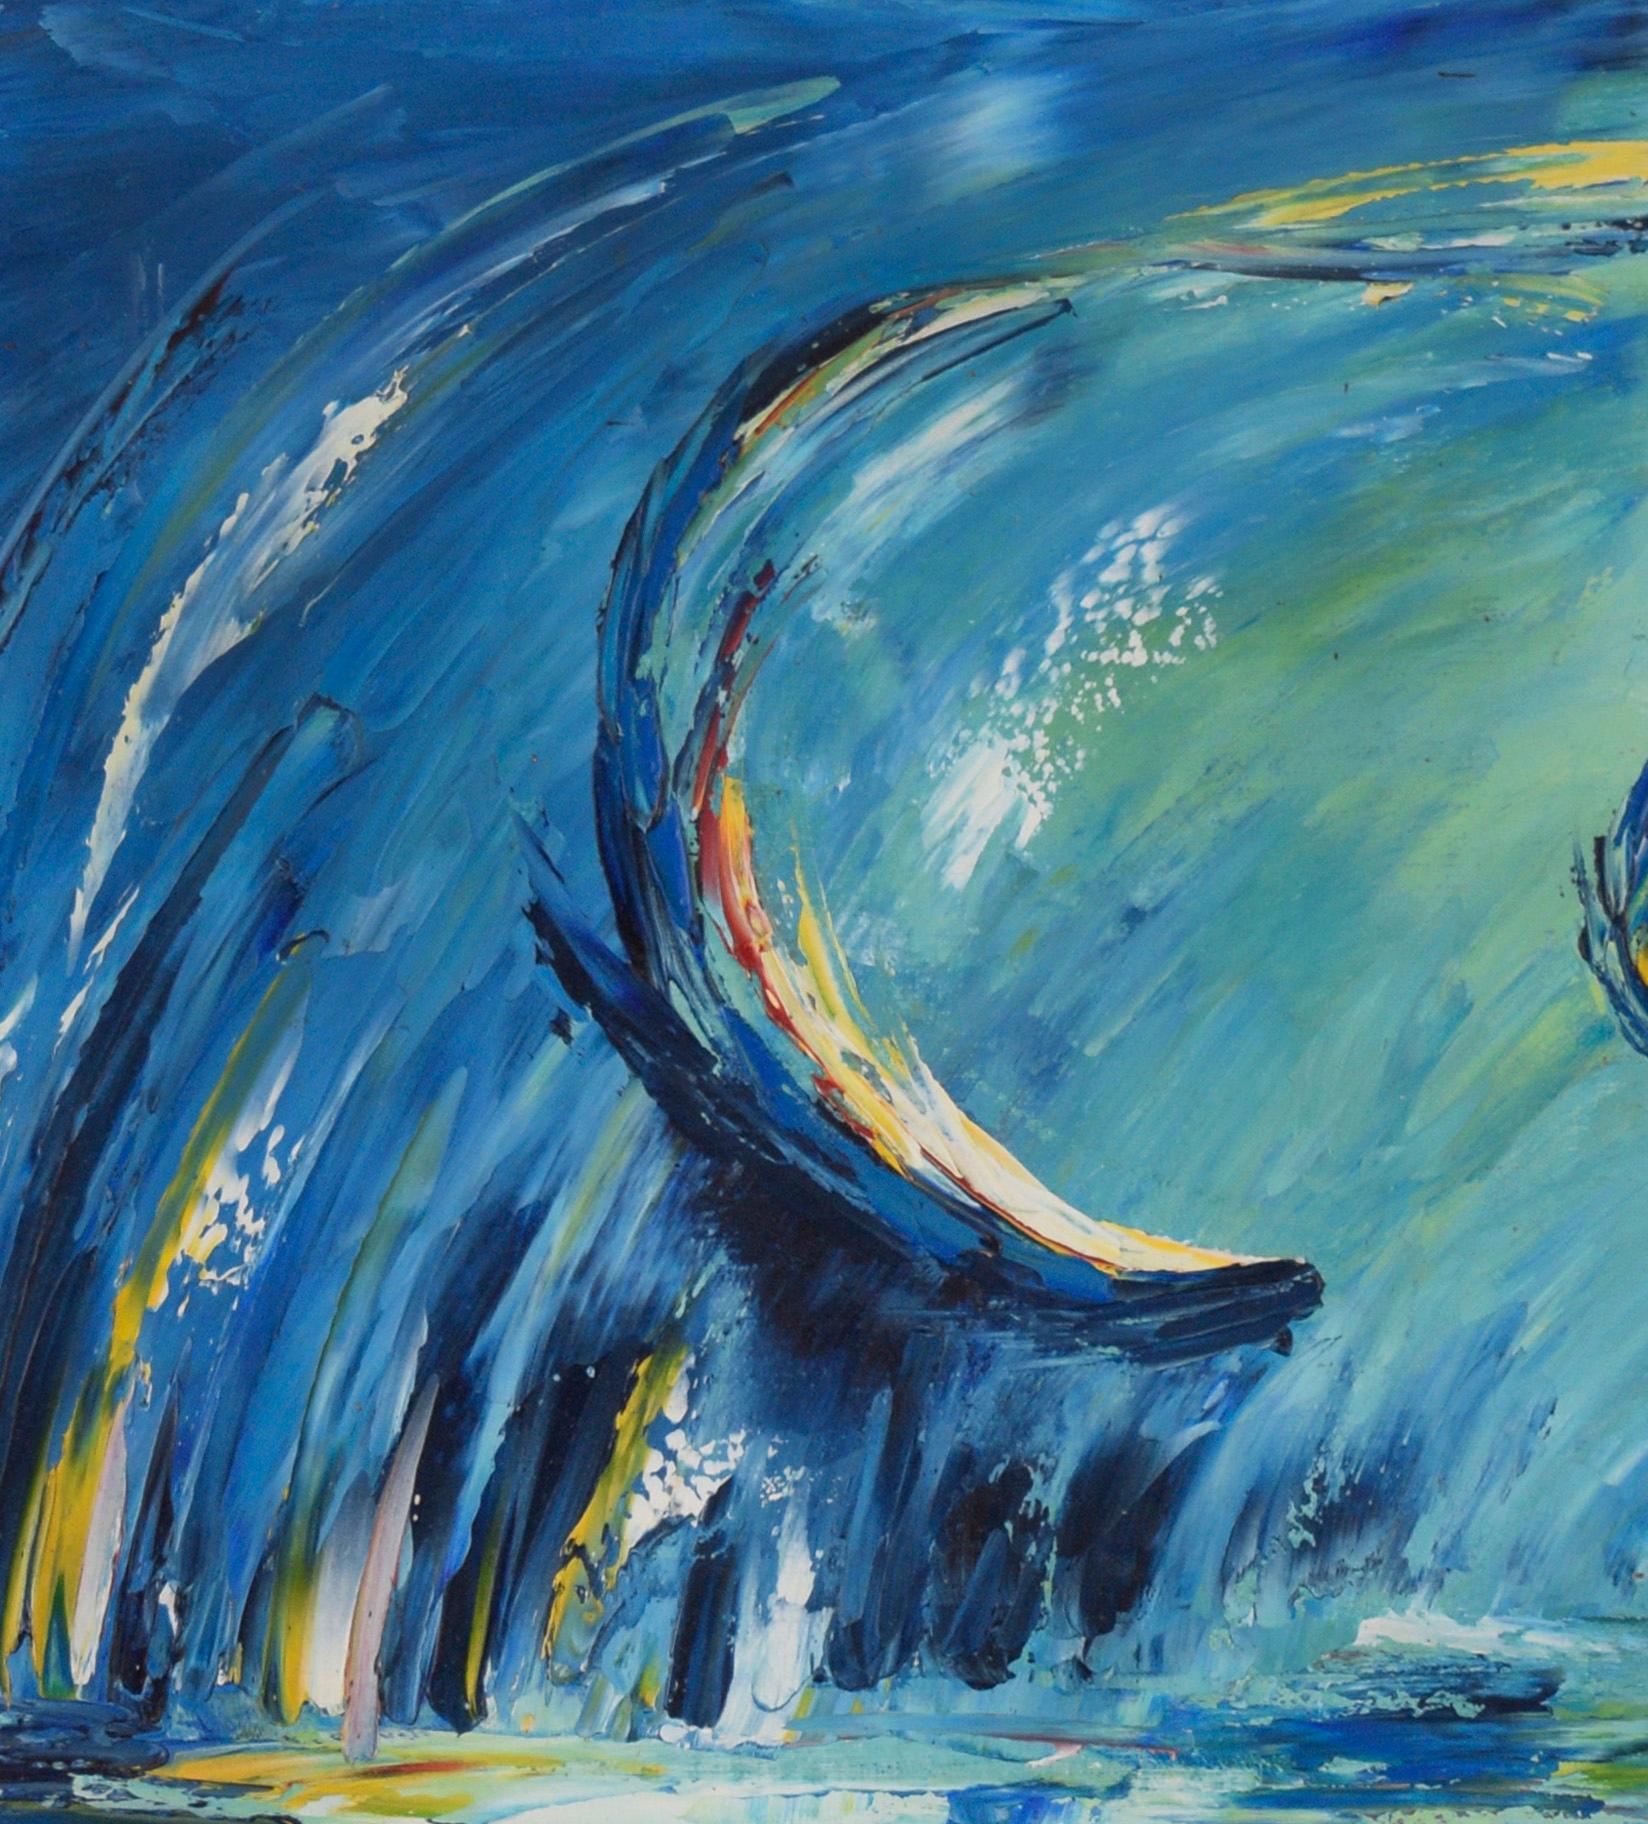 The Dance of water, Öl auf Leinwand, 1968
Abstraktes expressionistisches Gemälde mit drei um das Wasser kreisenden Fischen als Mittelpunkt. Dunkelblaue Farbtöne gehen in helle mit gelben und roten Nuancen über. Signiert 